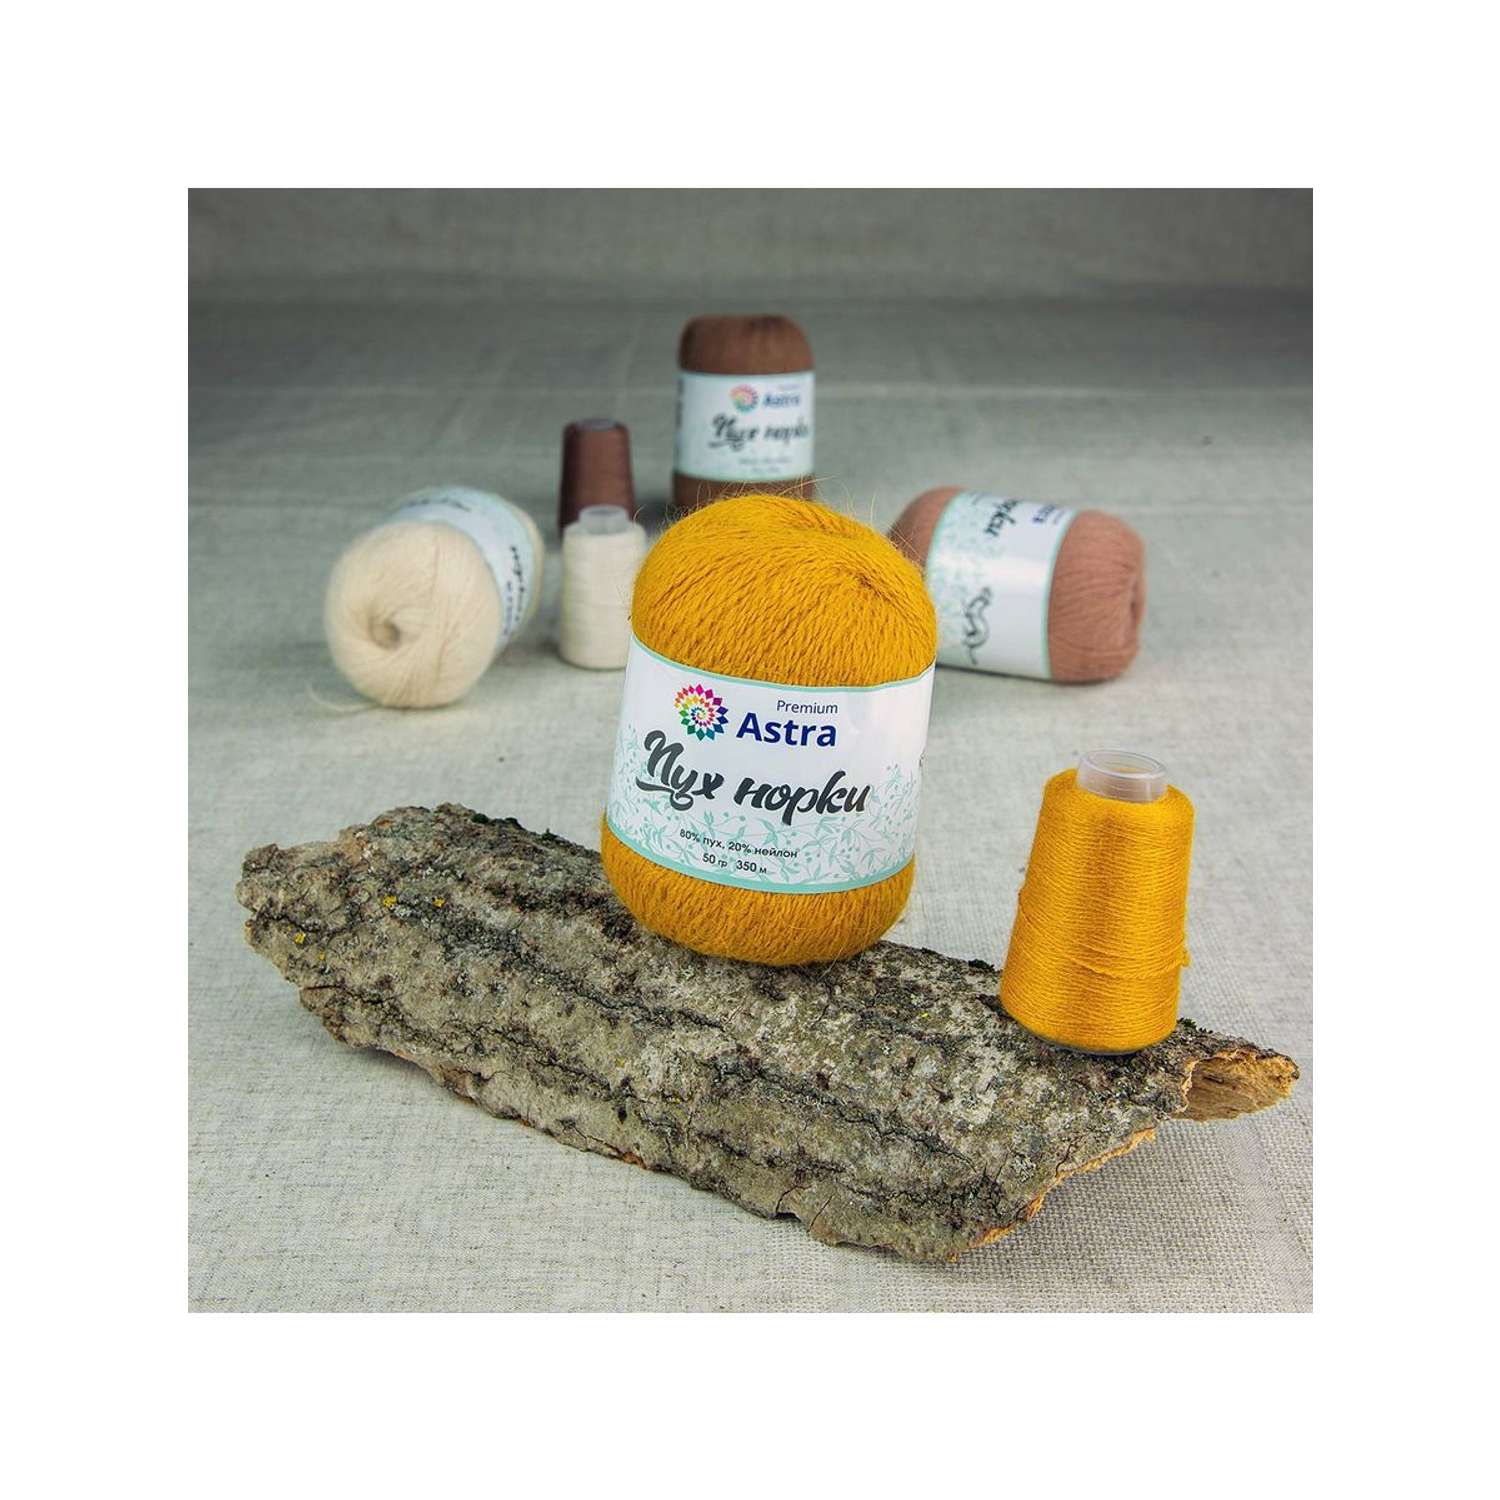 Пряжа Astra Premium Пух норки Mink yarn воздушная с ворсом 50 г 290 м 036 горчичный 1 моток - фото 9